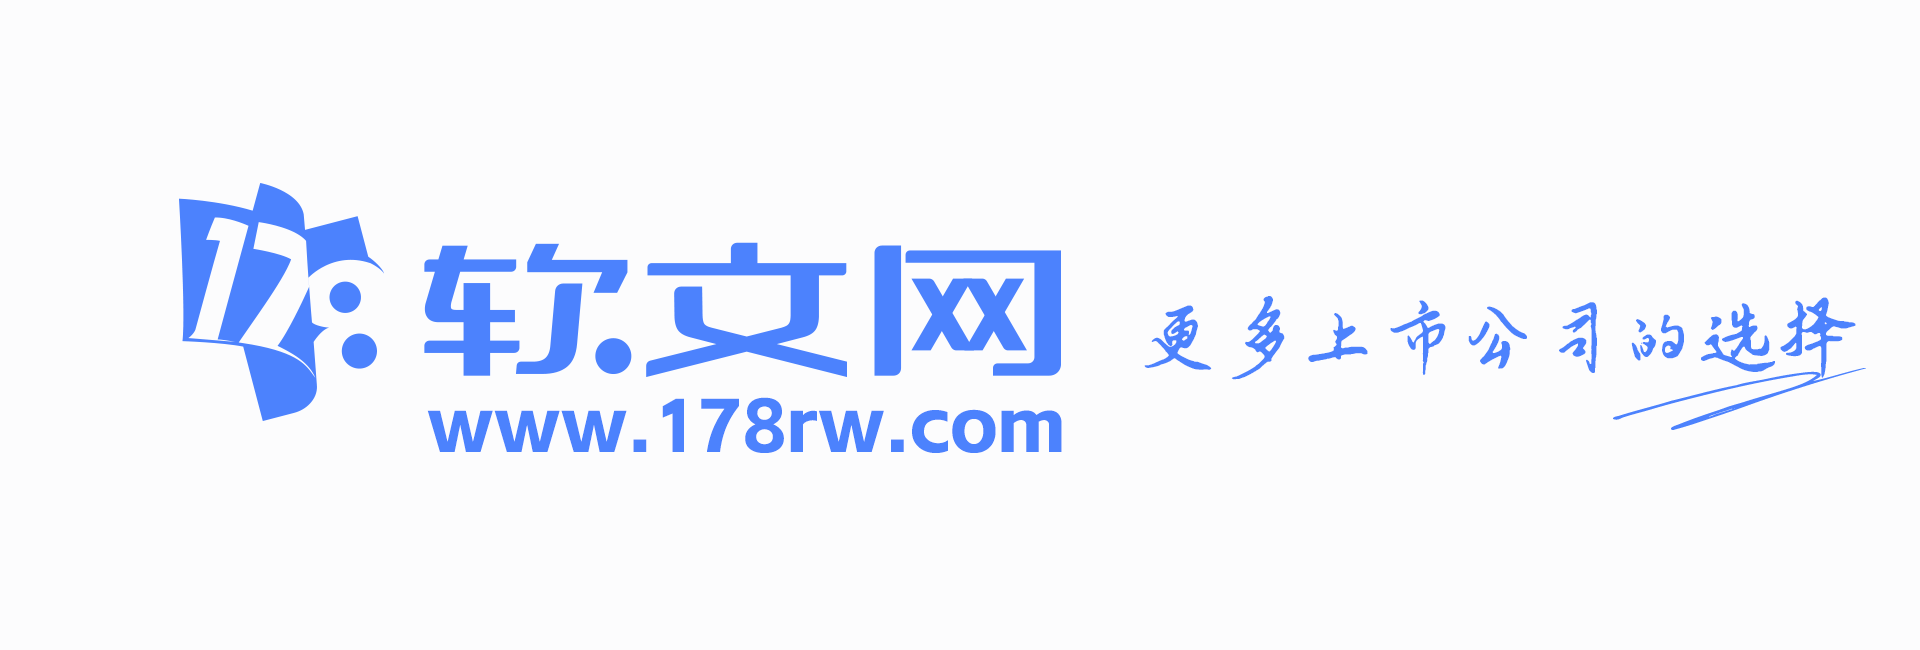 178软文网logo